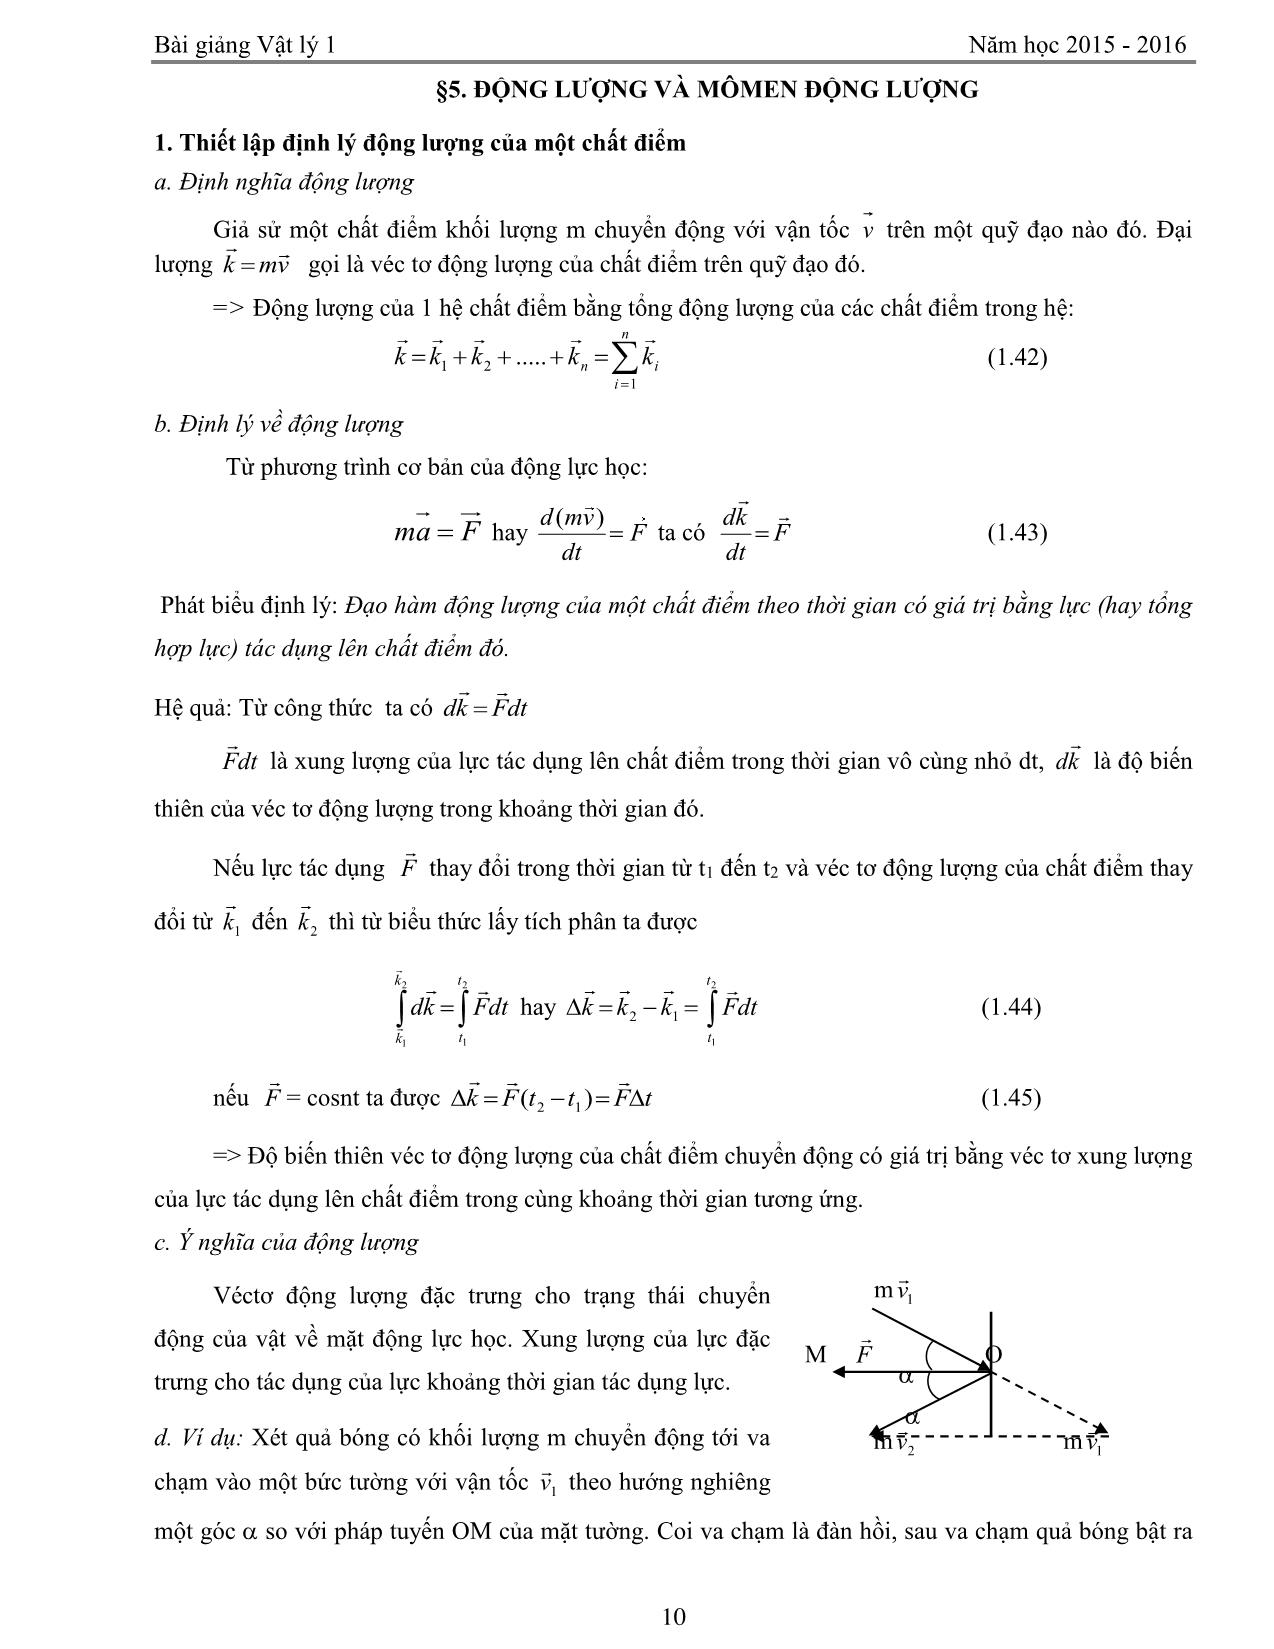 Giáo trình Vật lý 1 trang 10